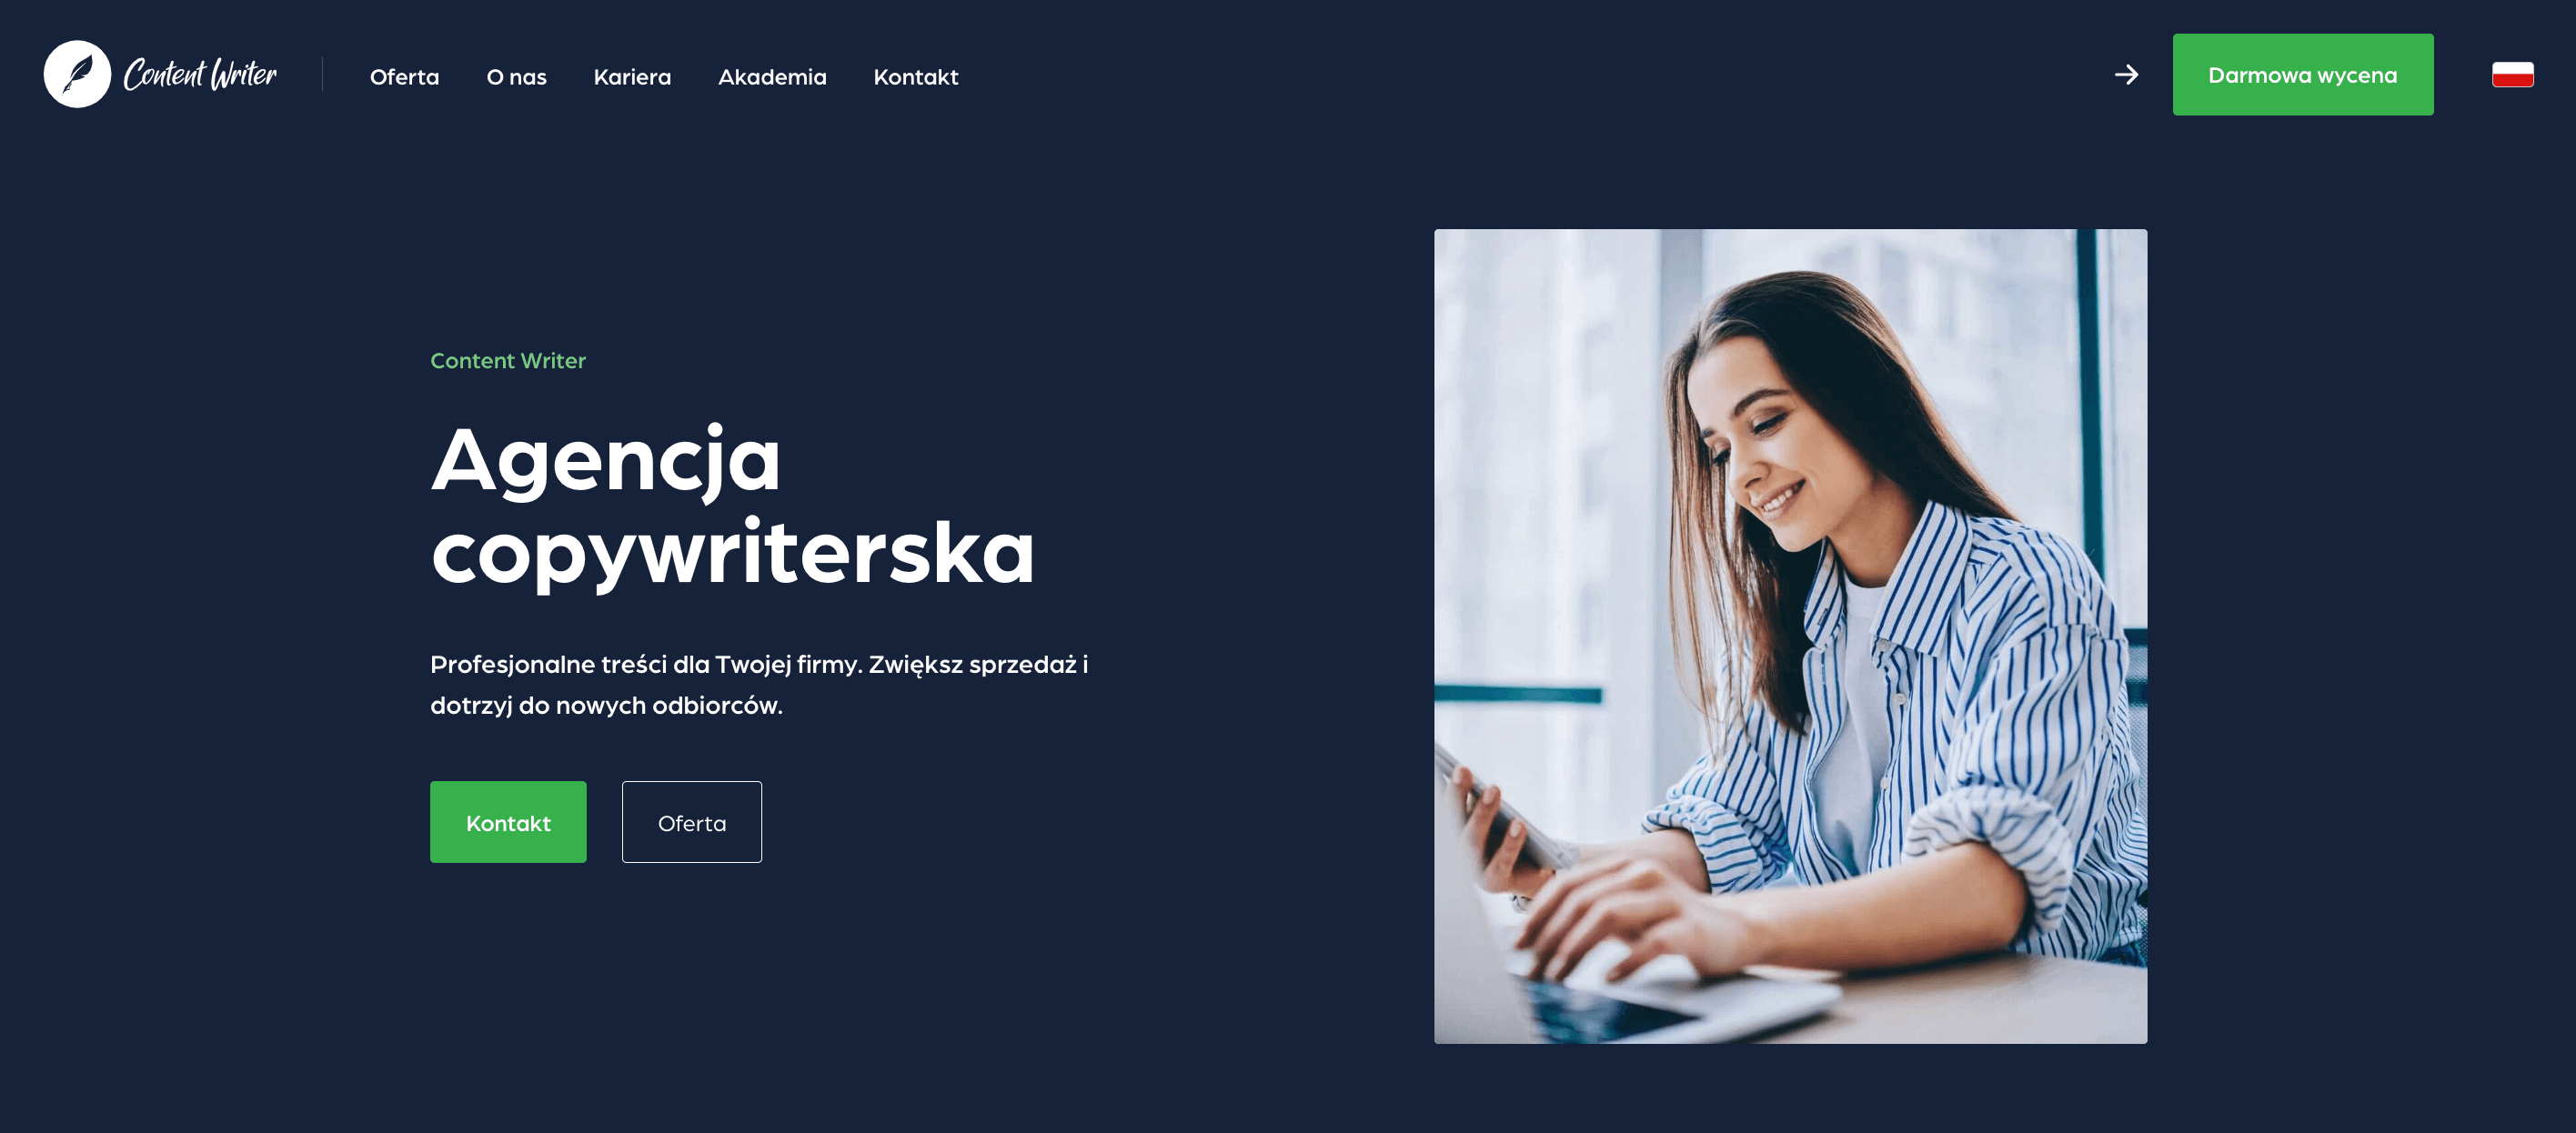 Strona główna witryny contentwriter.pl.